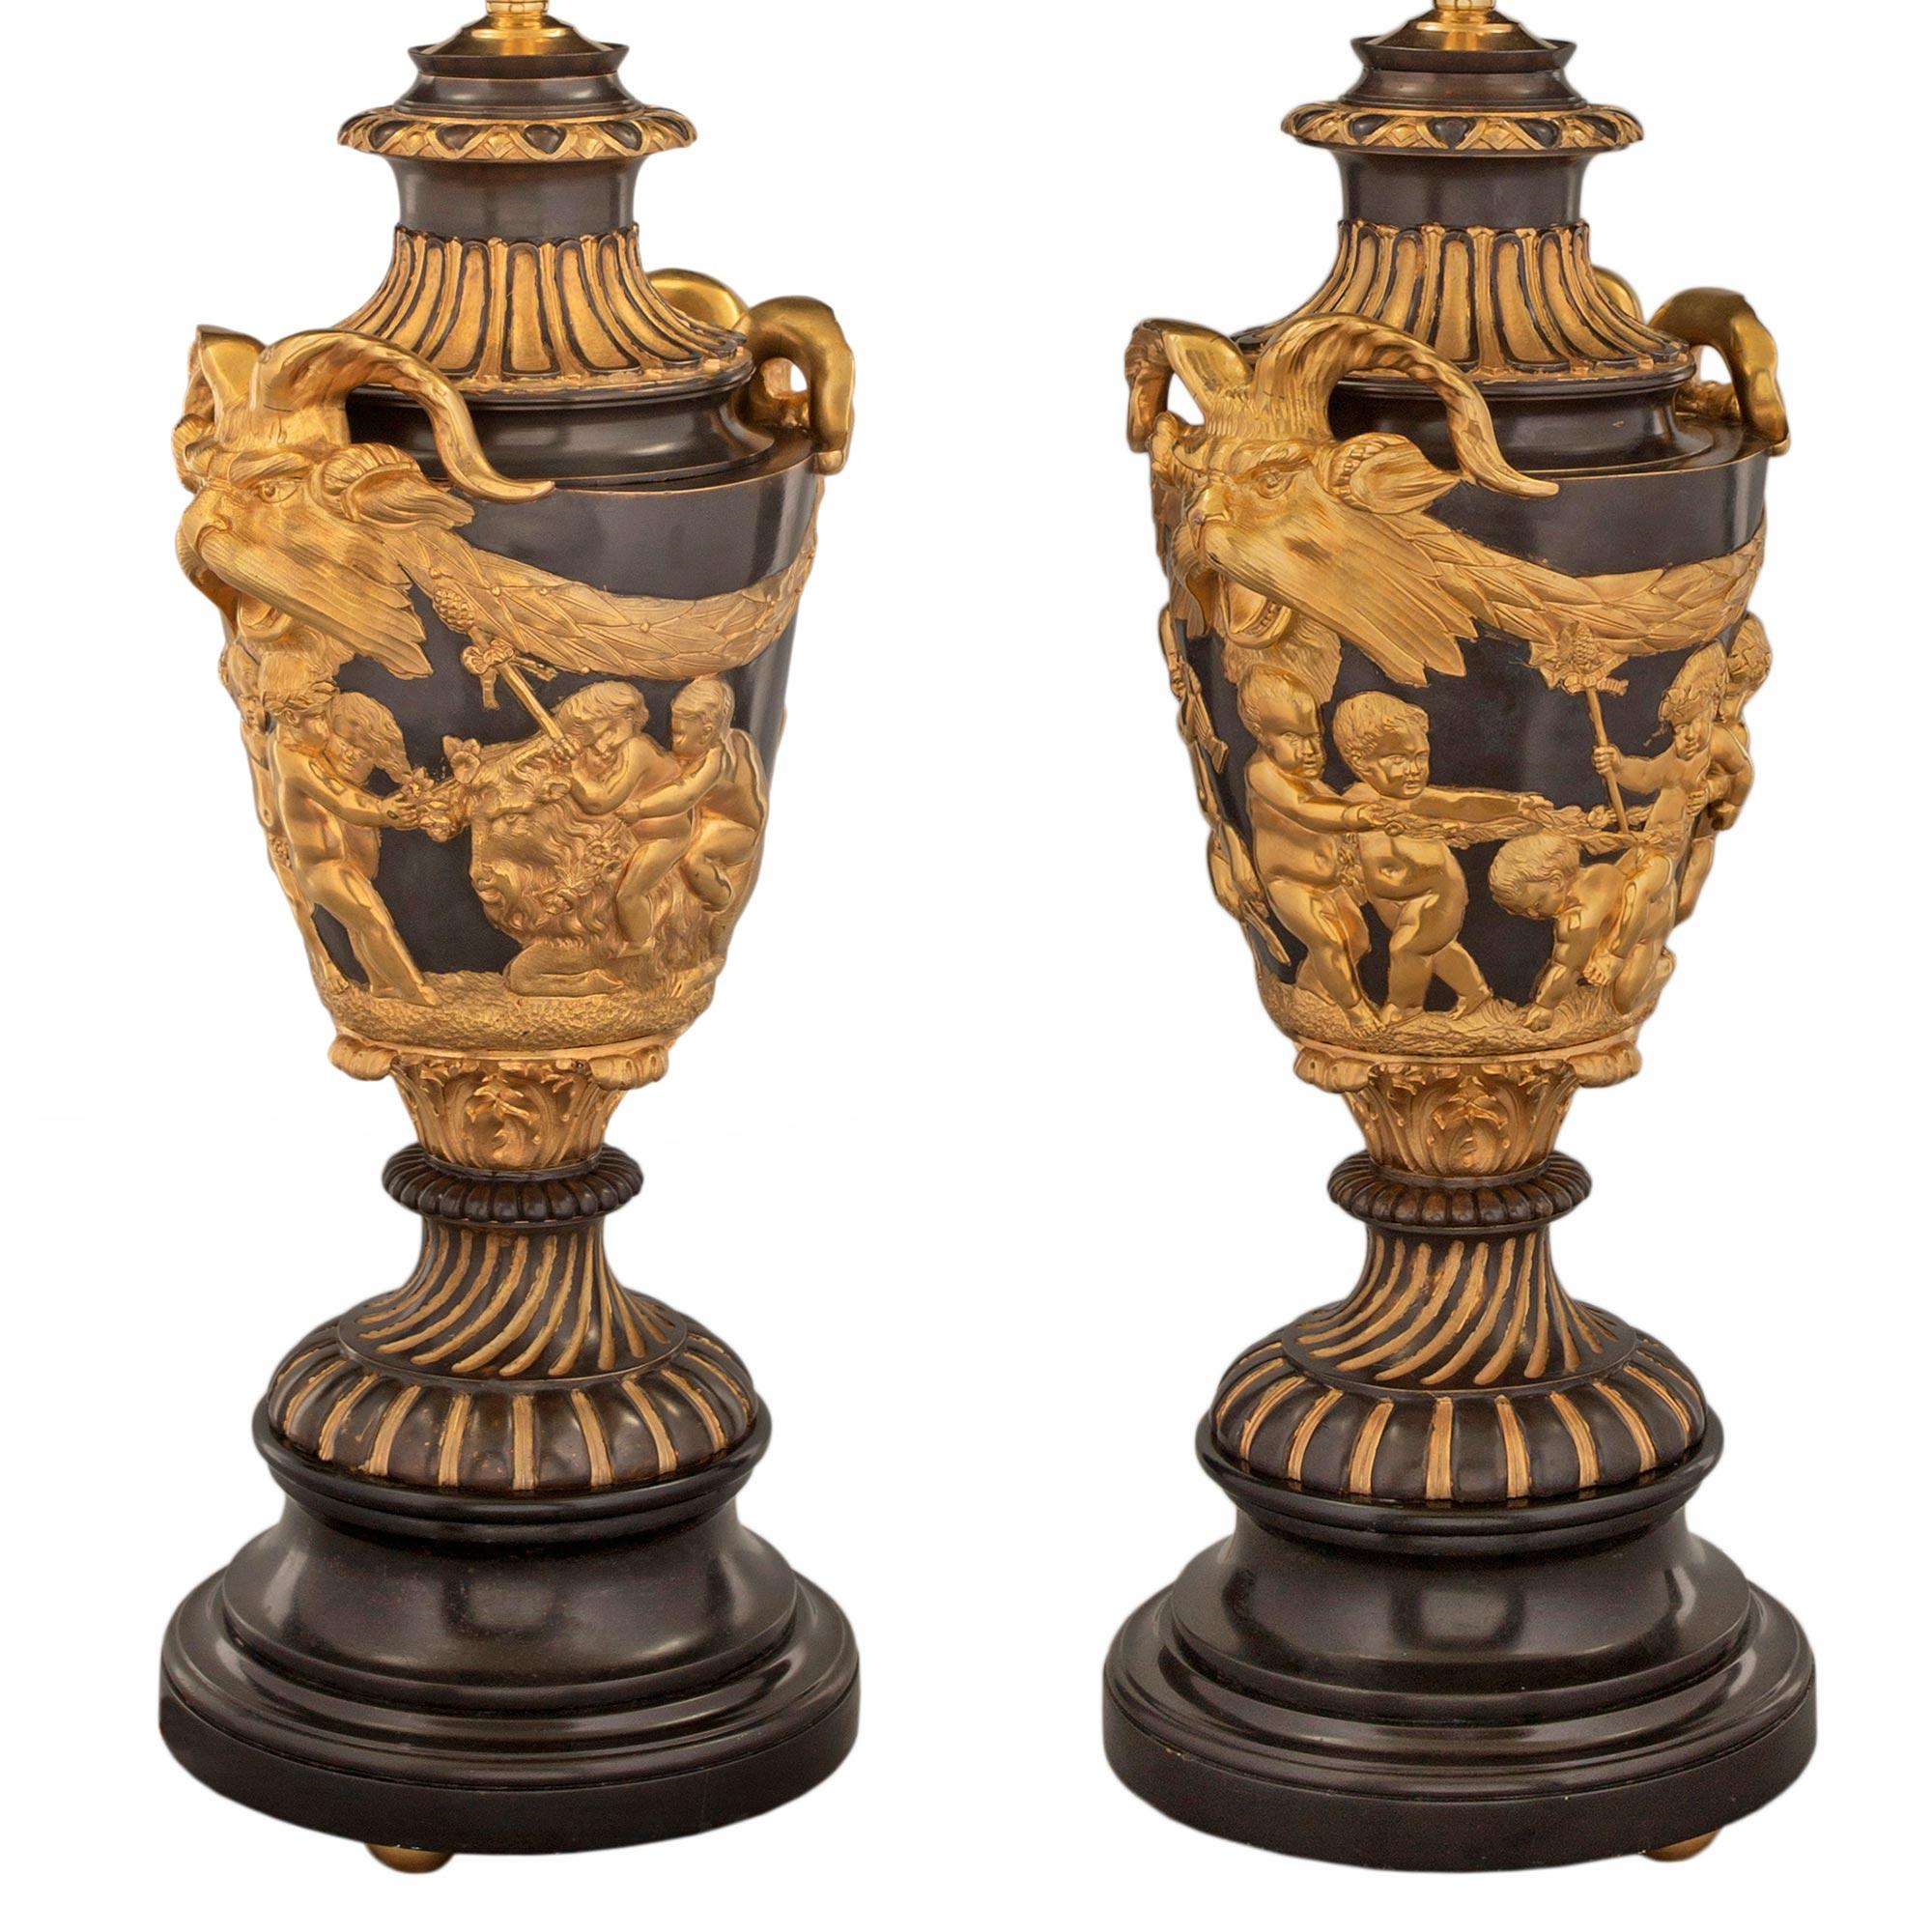 Une belle paire de lampes néo-classiques françaises du 19ème siècle. Lampes en marbre noir belge, bronze doré et bronze patiné à la manière de Clodion d'après un modèle de John Flaxman. Chaque lampe est surélevée par une belle base circulaire en